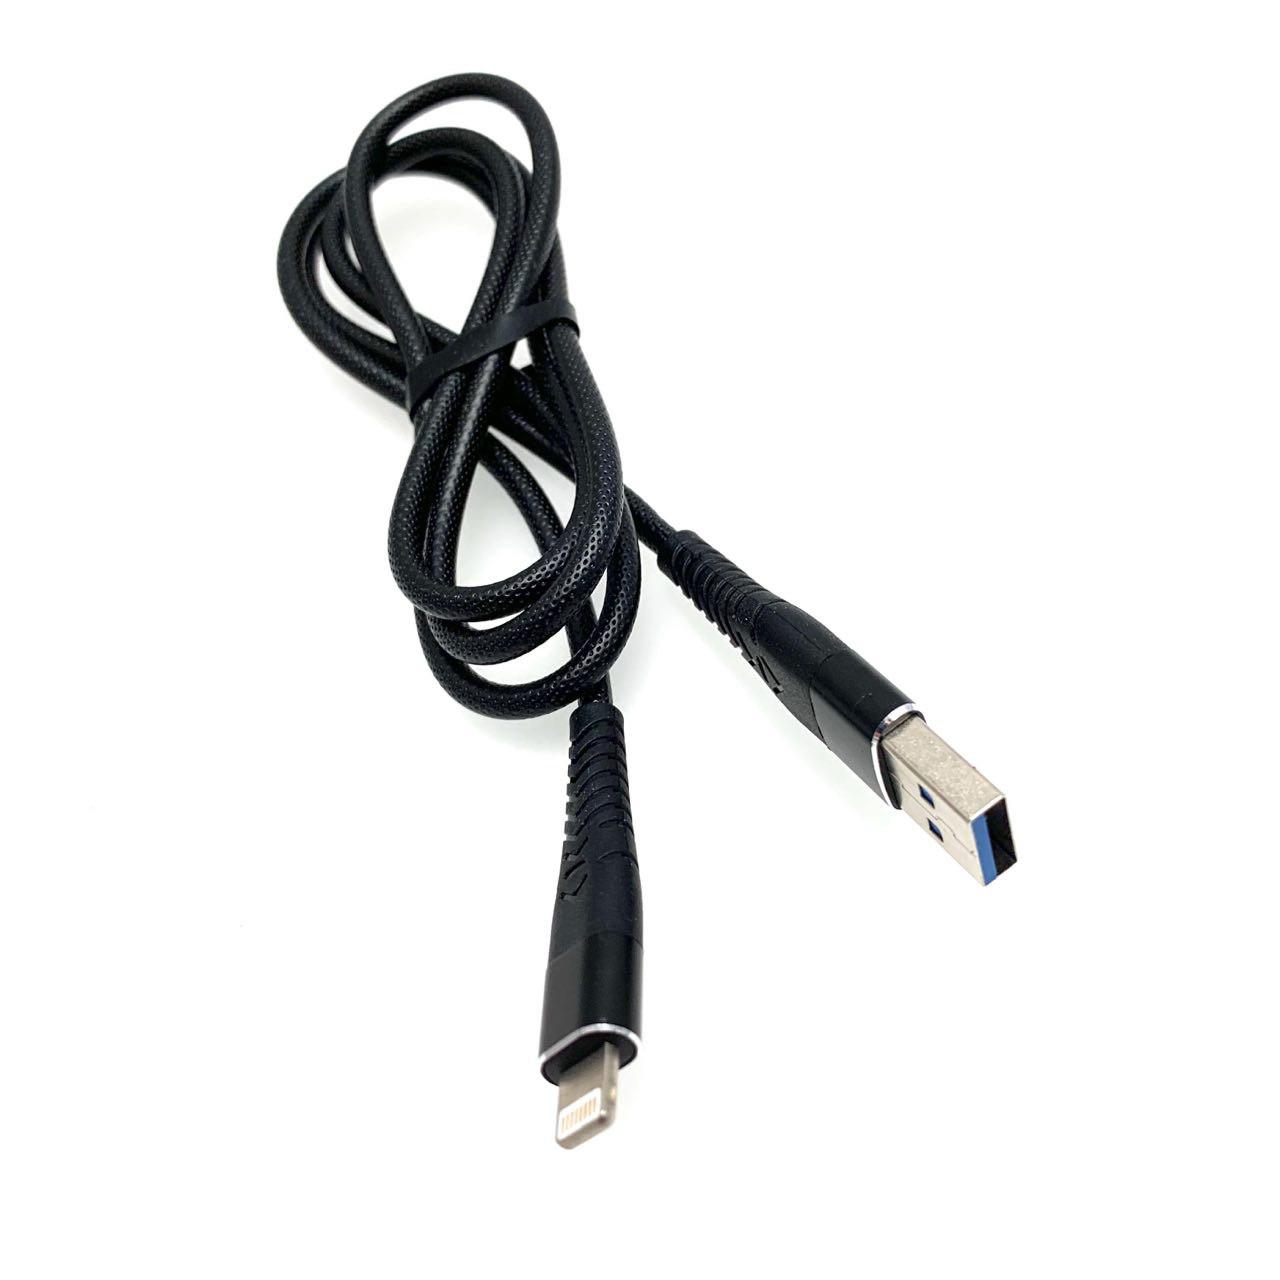 USB Дата-кабель "R18" APPLE Lightning 8-pin силиконовый эластичный, морозоустойчивый, 1 метр чёрного цвета, синие контакты.